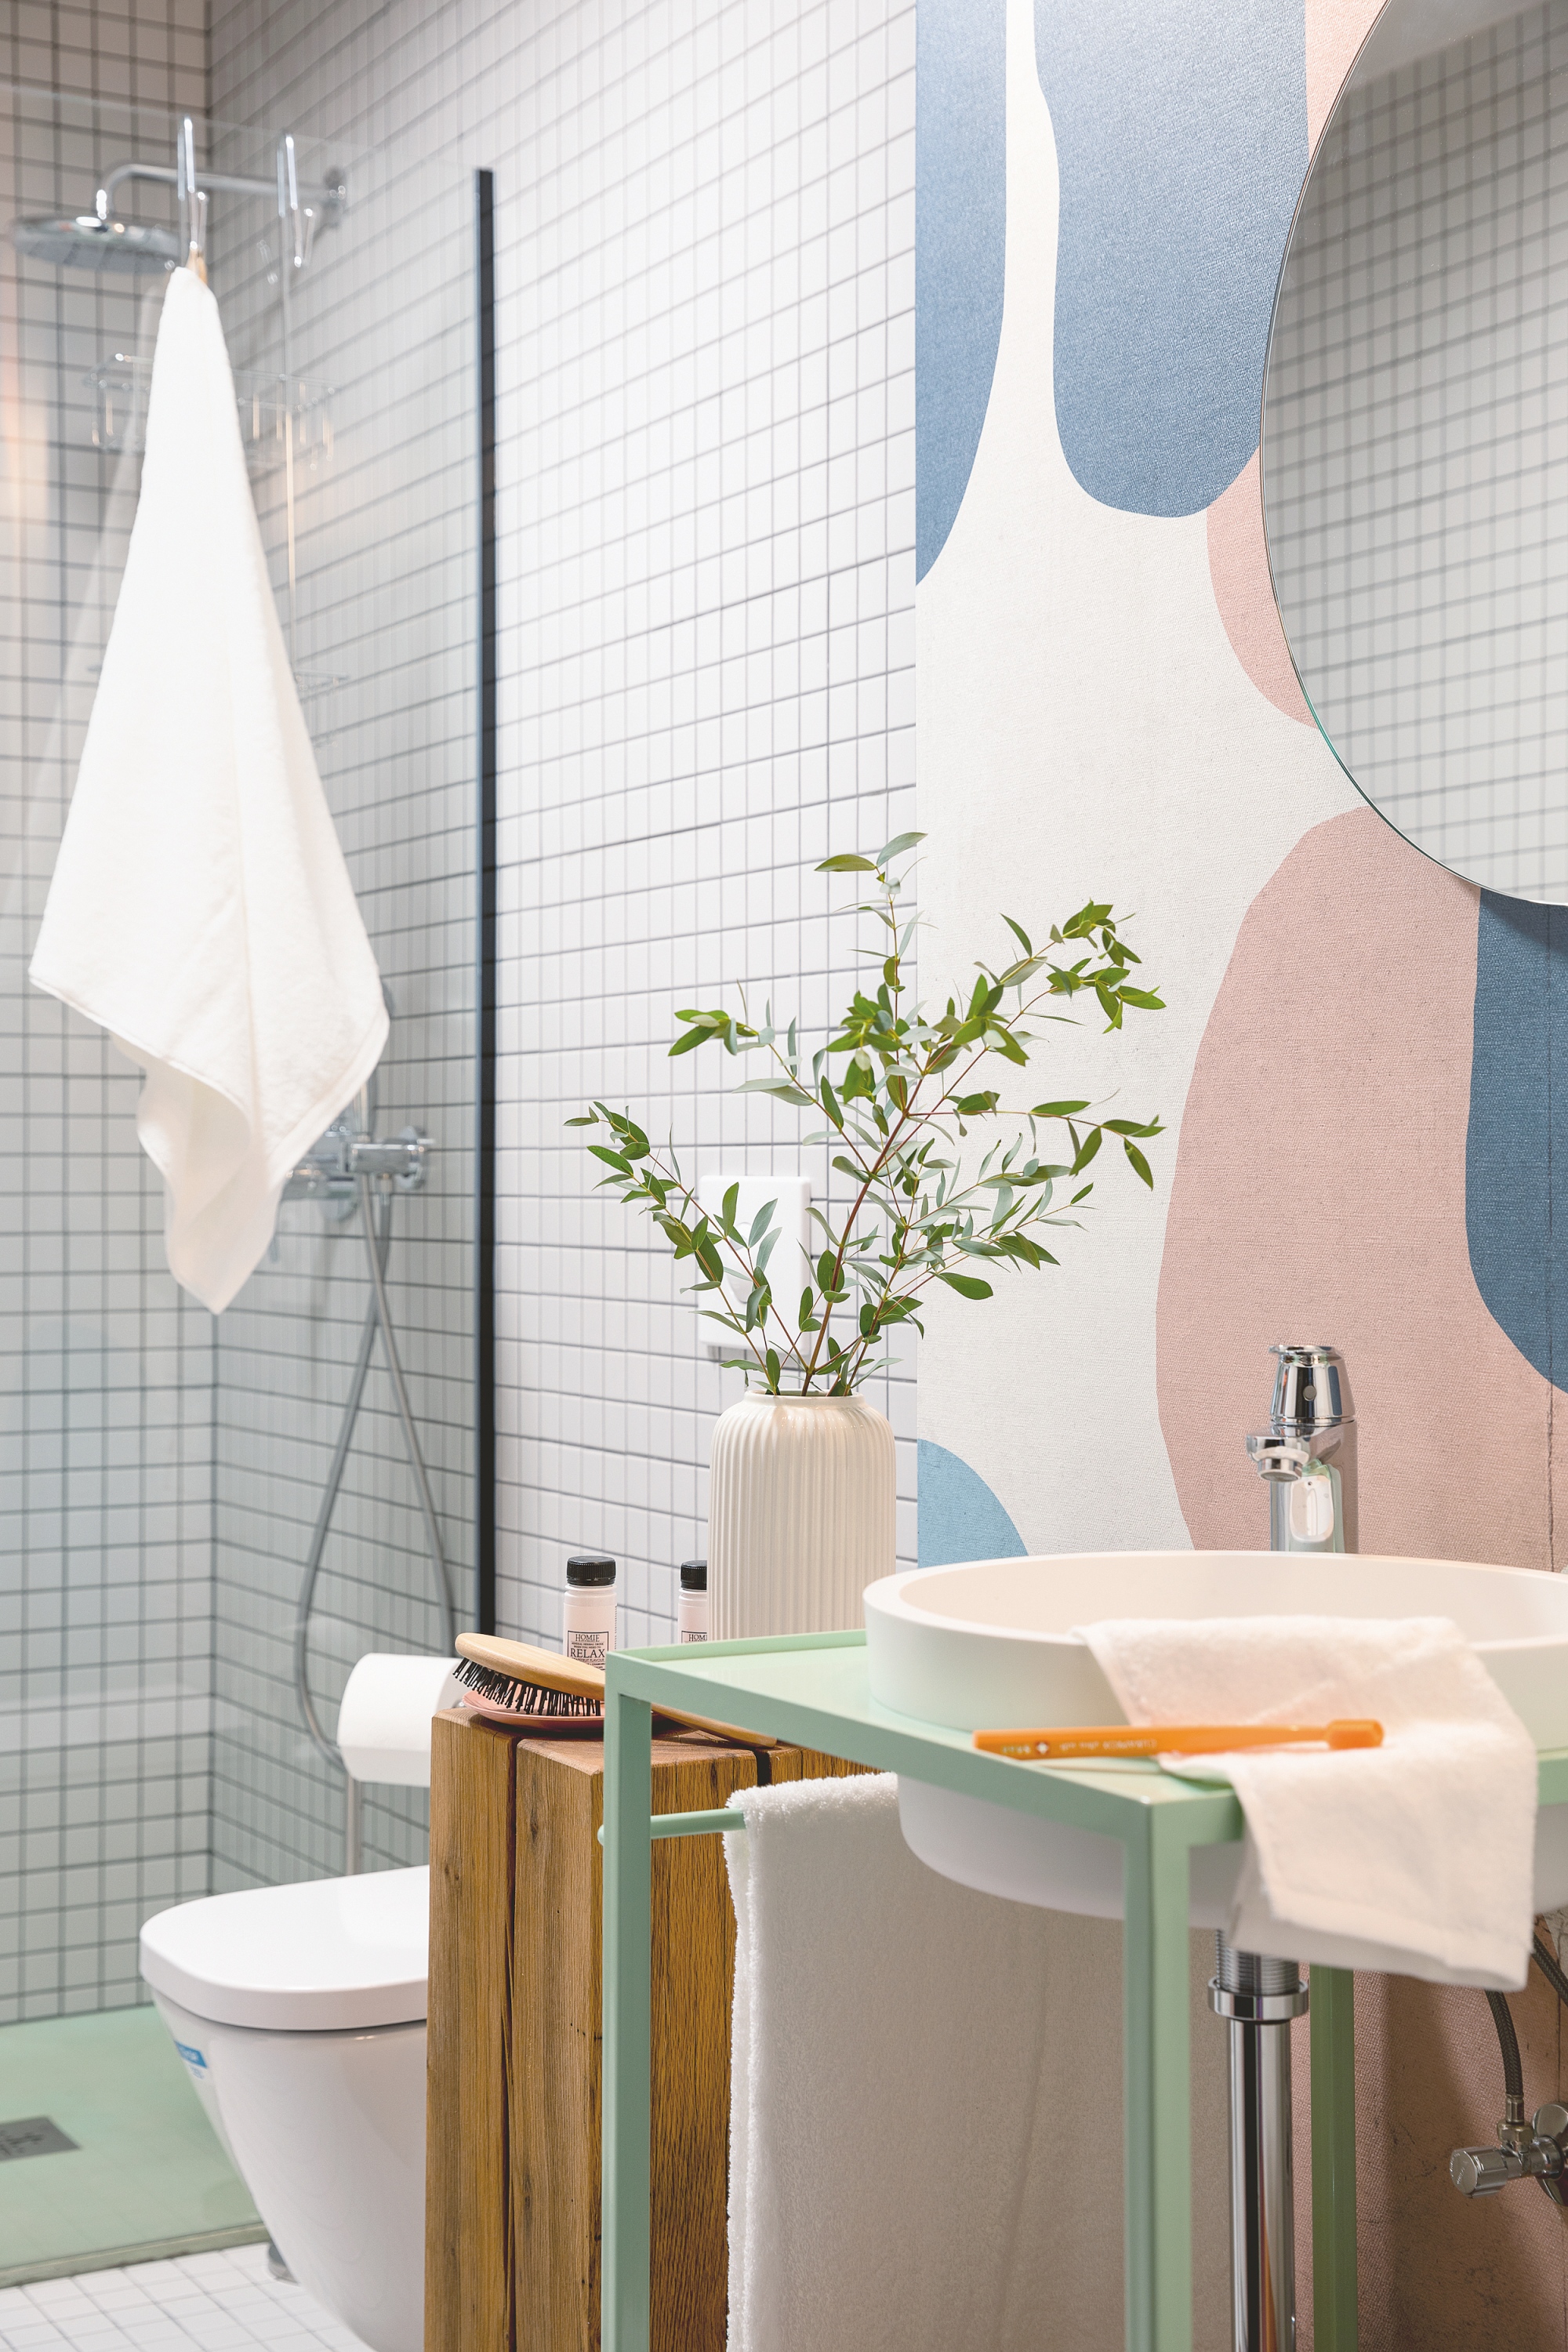 A SmartApart egy okoshotel, amely saját fejlesztésű applikációval működik. A fürdőszoba-design izgalmas részletei: vizes tapéta, farönk, és egyedi mosdópult. Fotó: F. Tóth Gábor, Stylist: Lukász Eszter 